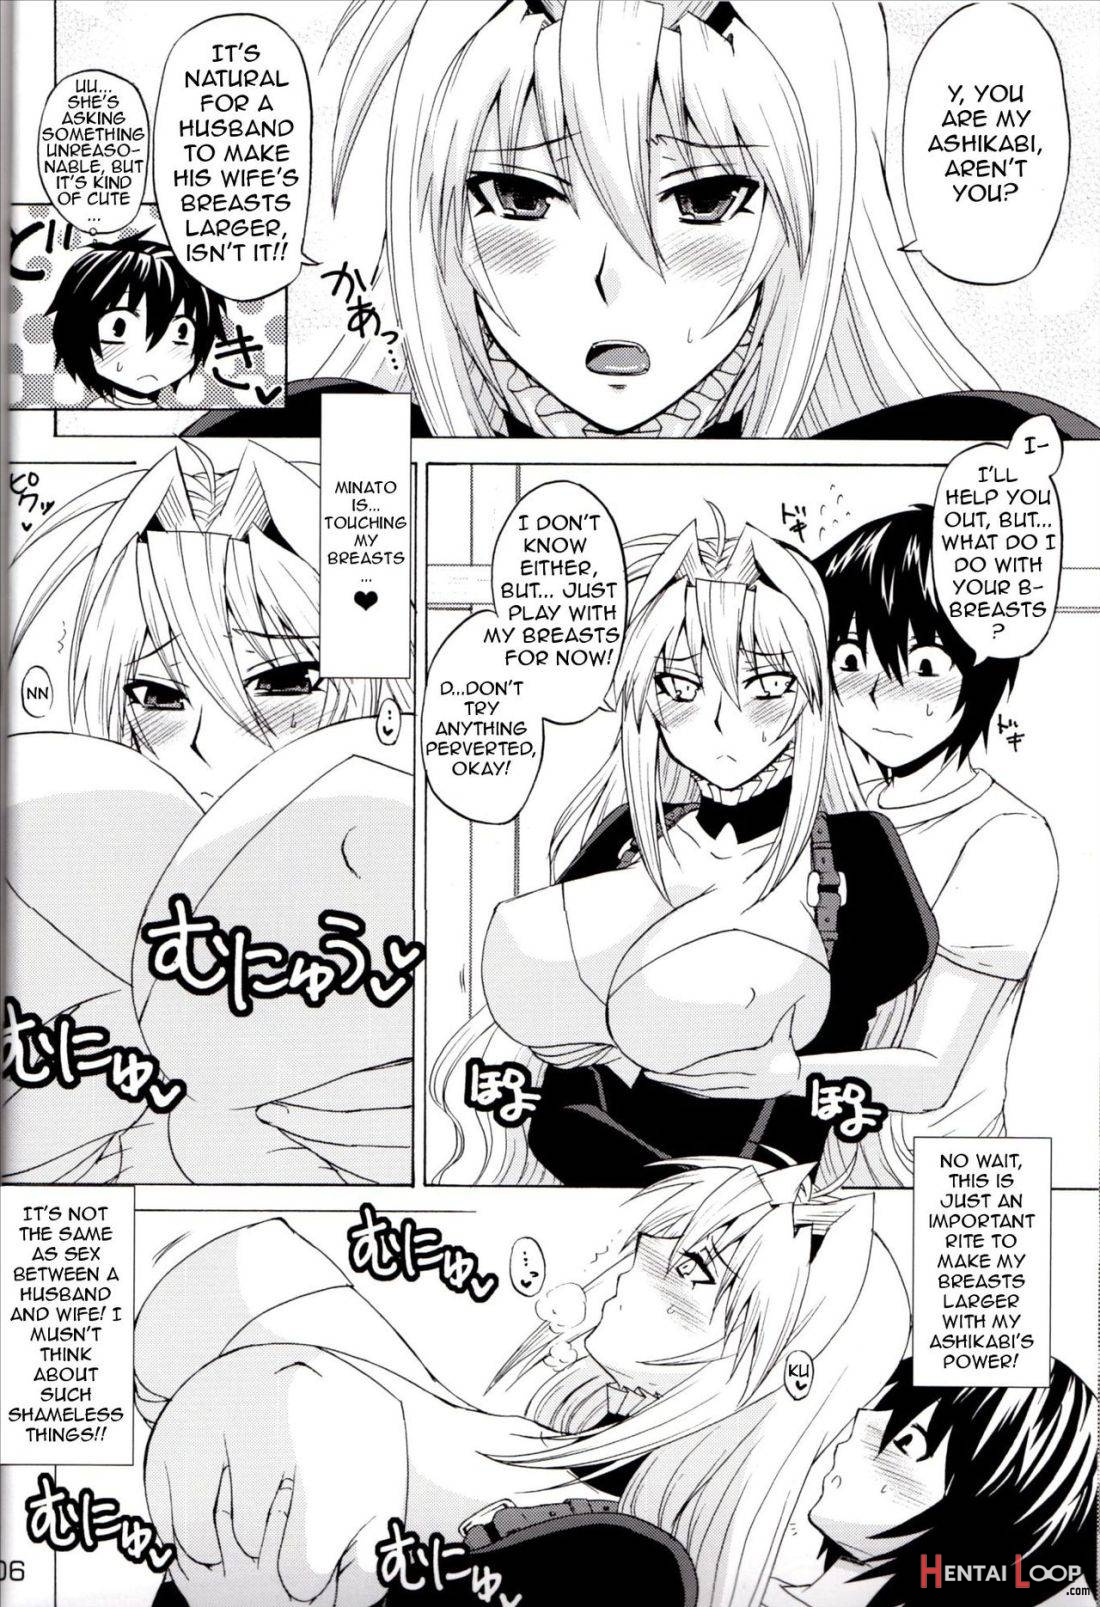 Tsukiumi no Chichi o Mominagara Anime 2-ki o Machi Wabite Miru. page 3